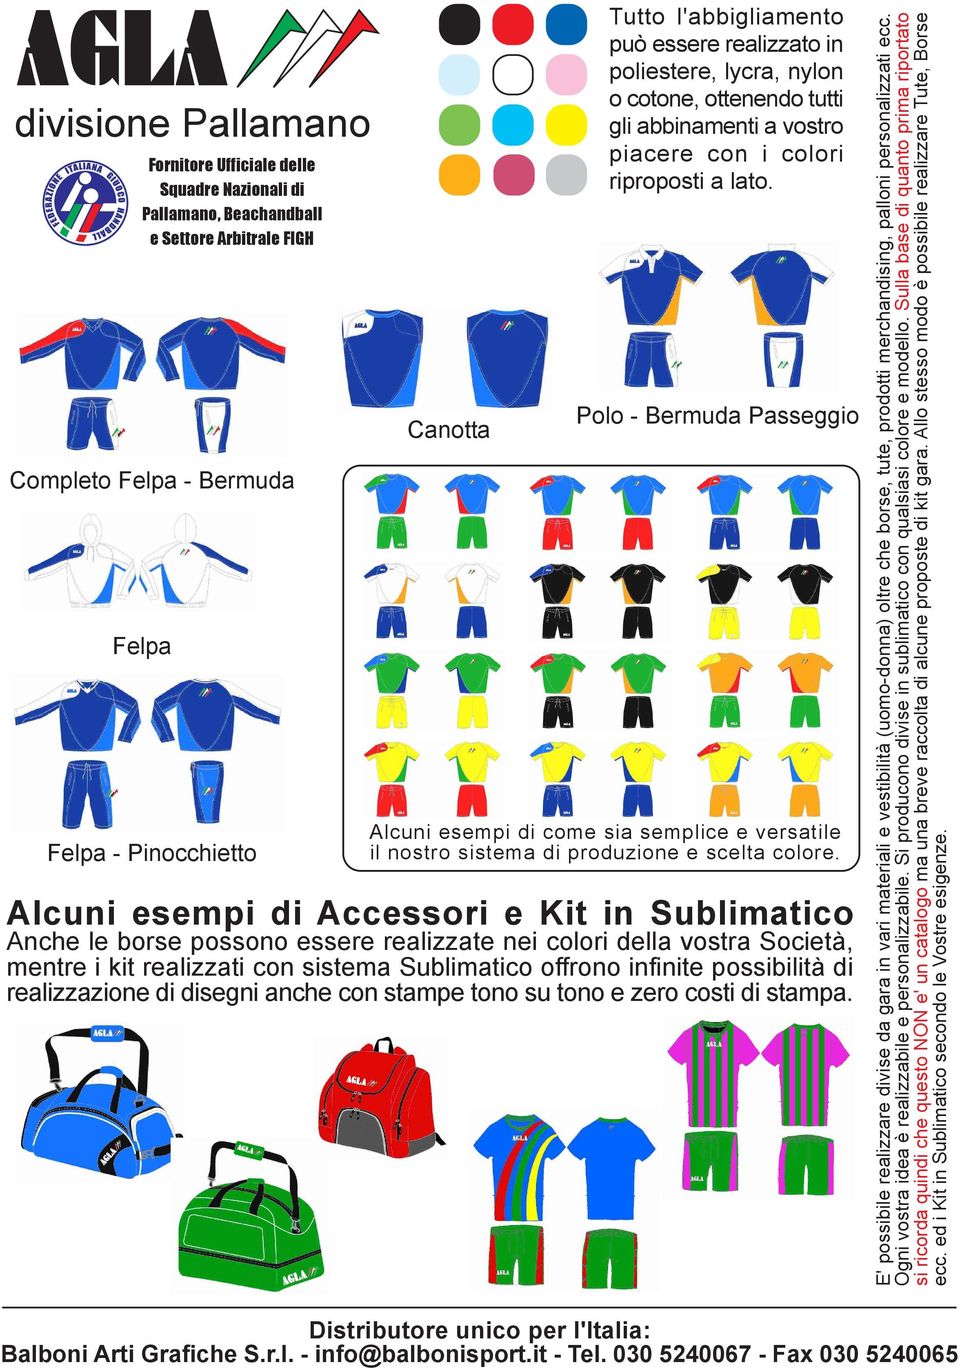 Alcuni esempi di Accessori e Kit in Sublimatico Anche le borse possono essere realizzate nei colori della vostra